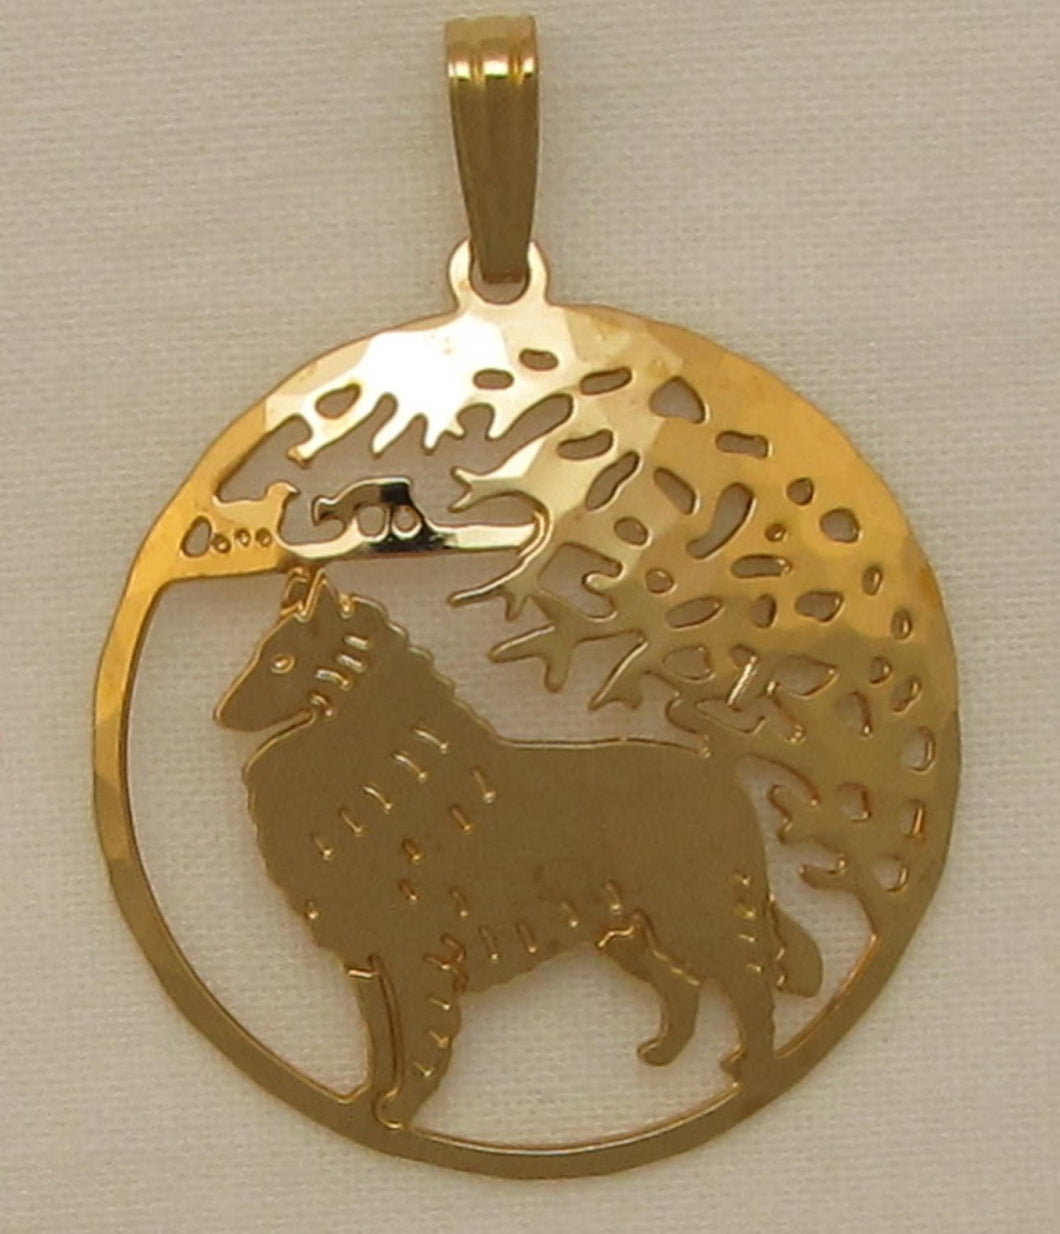 Belgian Sheepdog / Tervuren Pendant by Touchstone Dog Designs // Belgian Sheepdog / Tervuren Jewelry  // Dog Breed Jewelry